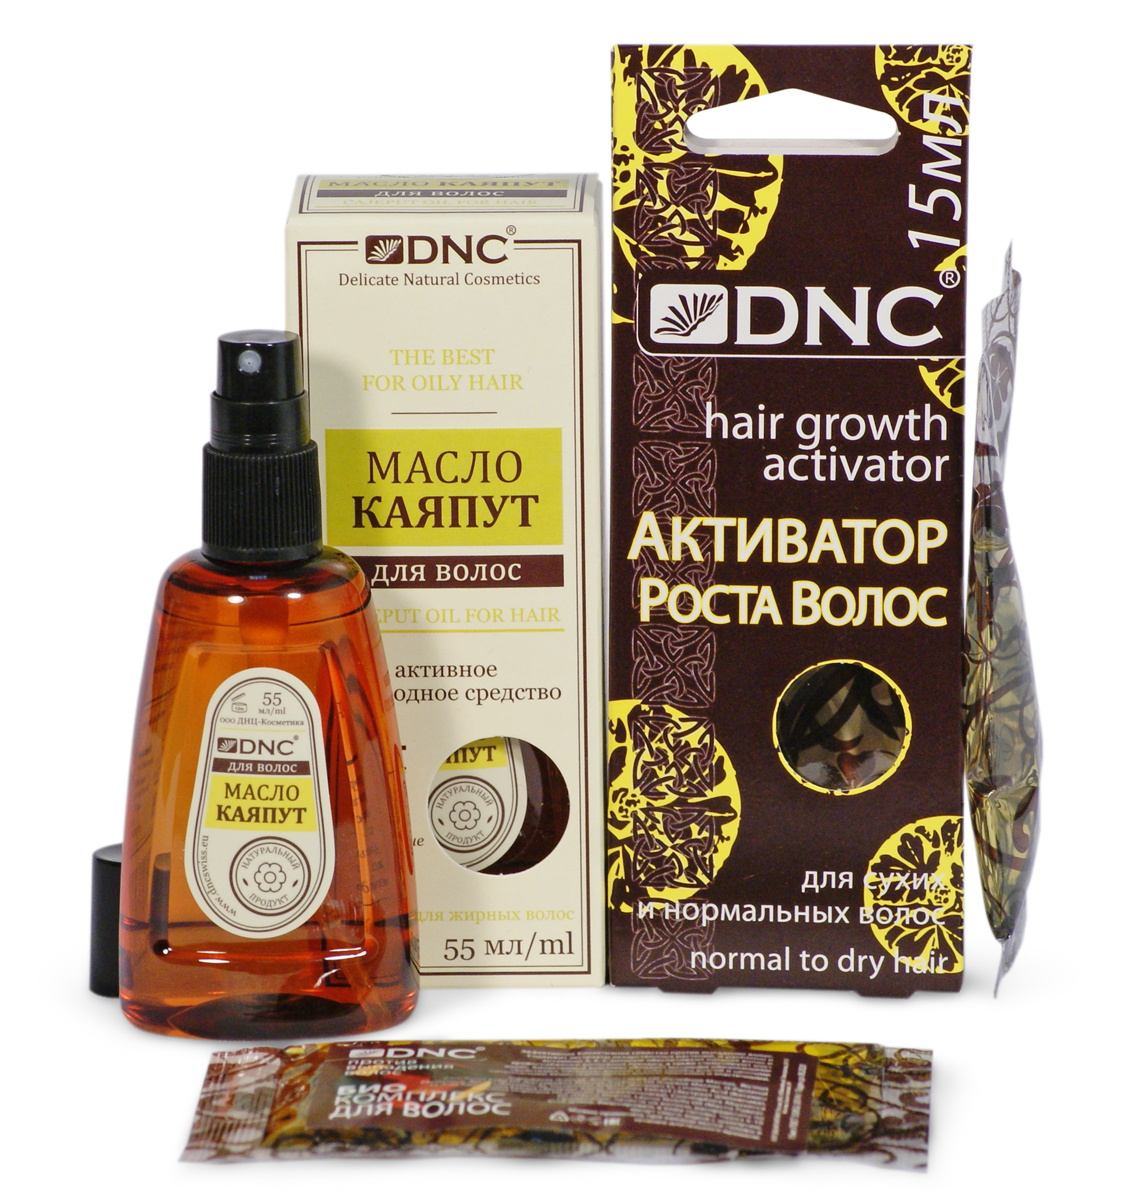 Масло активатор роста. DNC масло Каяпут для волос. DNC активатор роста. Активатор роста волос золотой шелк масло косметическое. Масло Каяпут для волос применение.